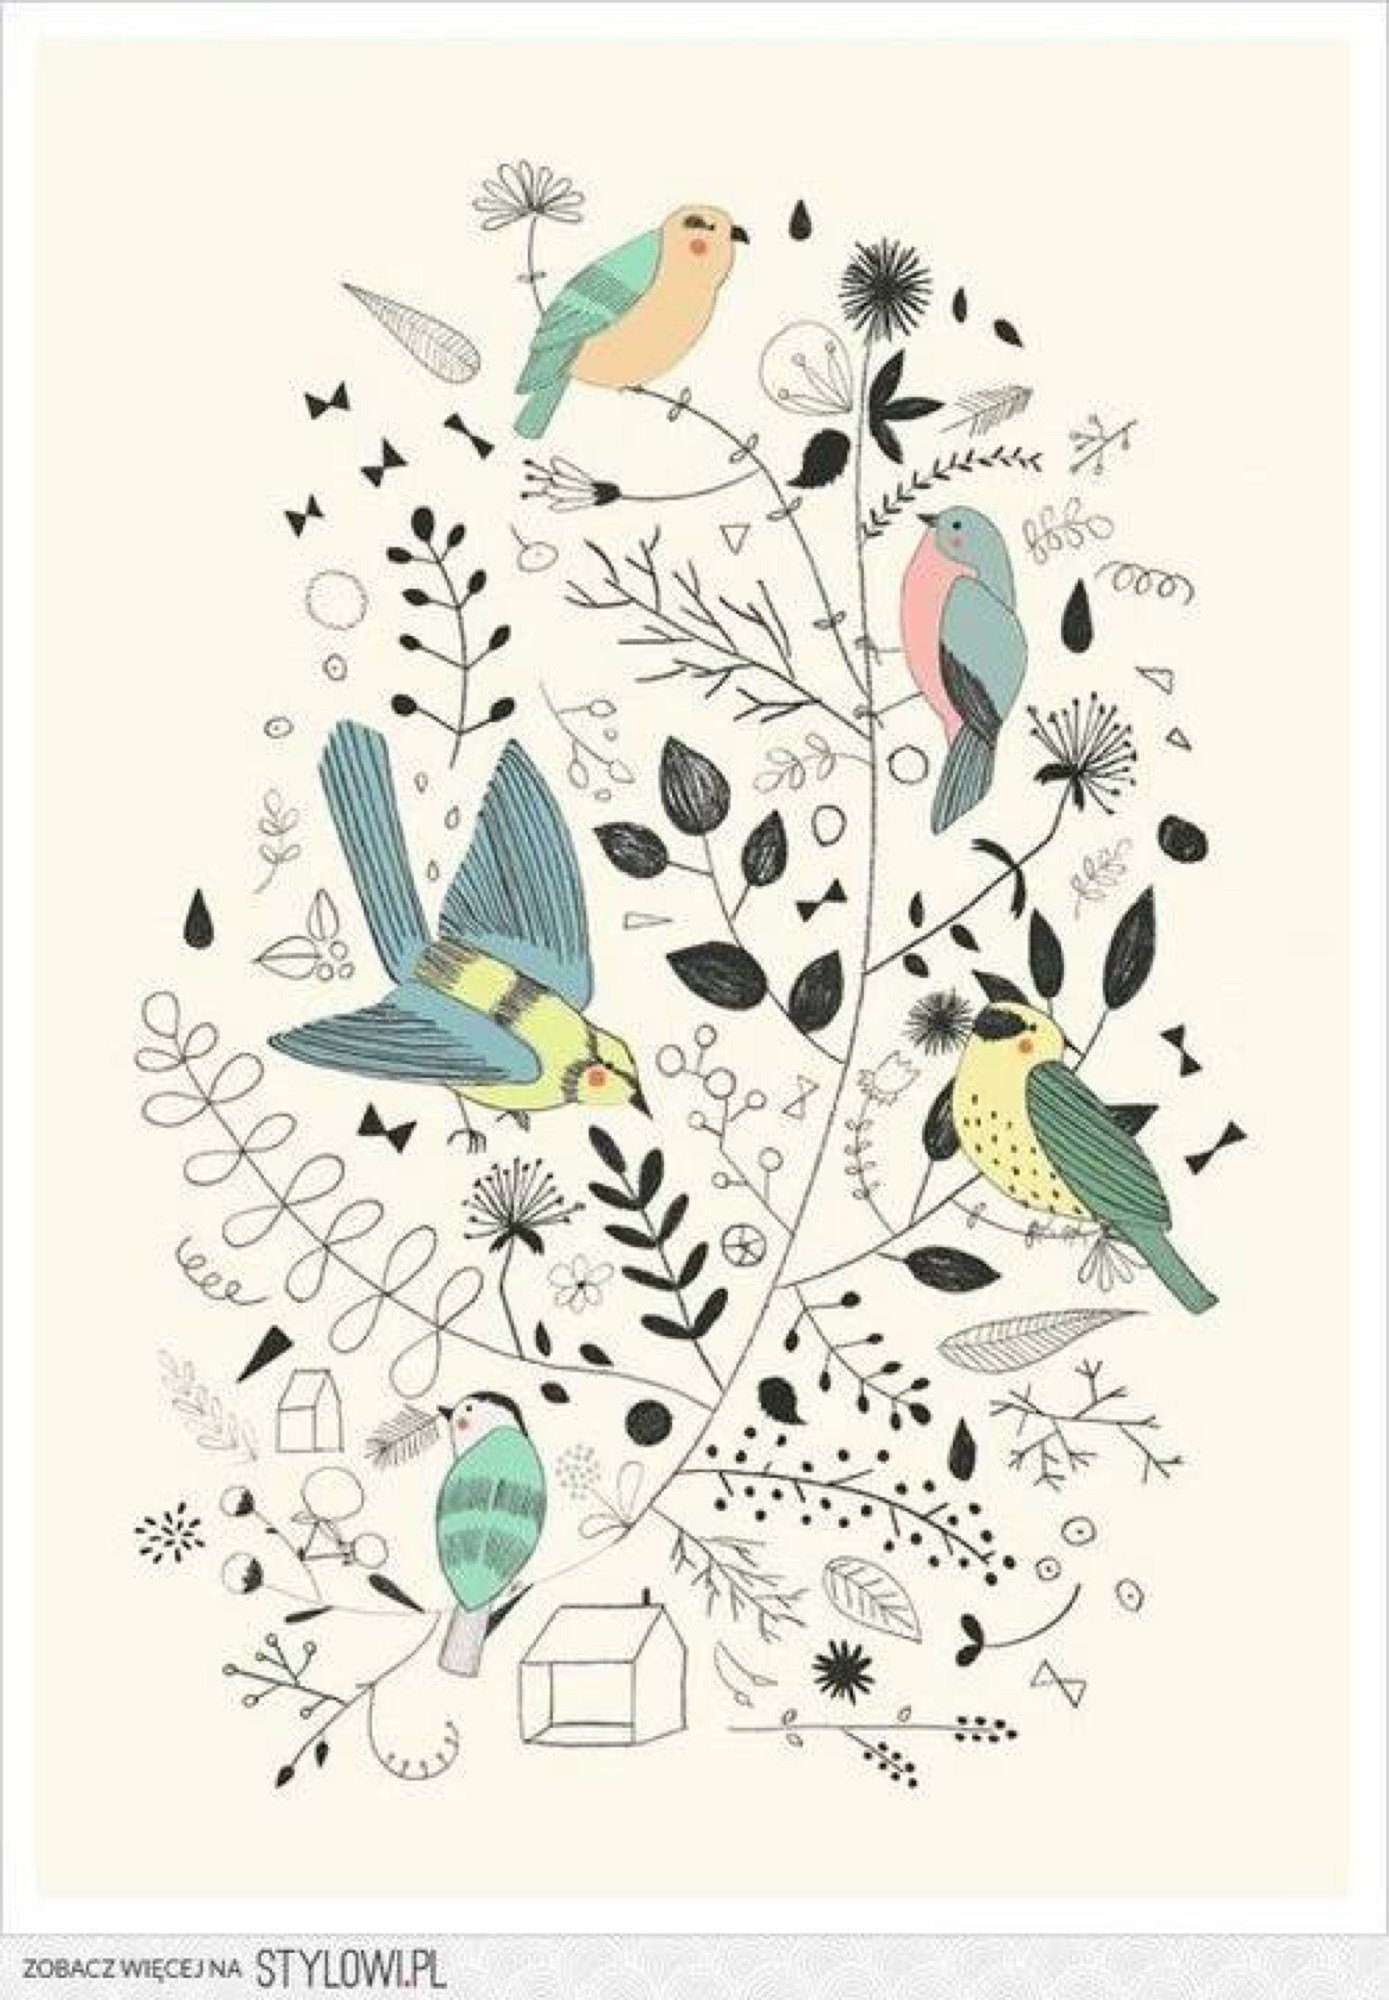 Постер птицы. Постеры с птичками. Постеры с изображением птиц. Постер красивый с птичками.